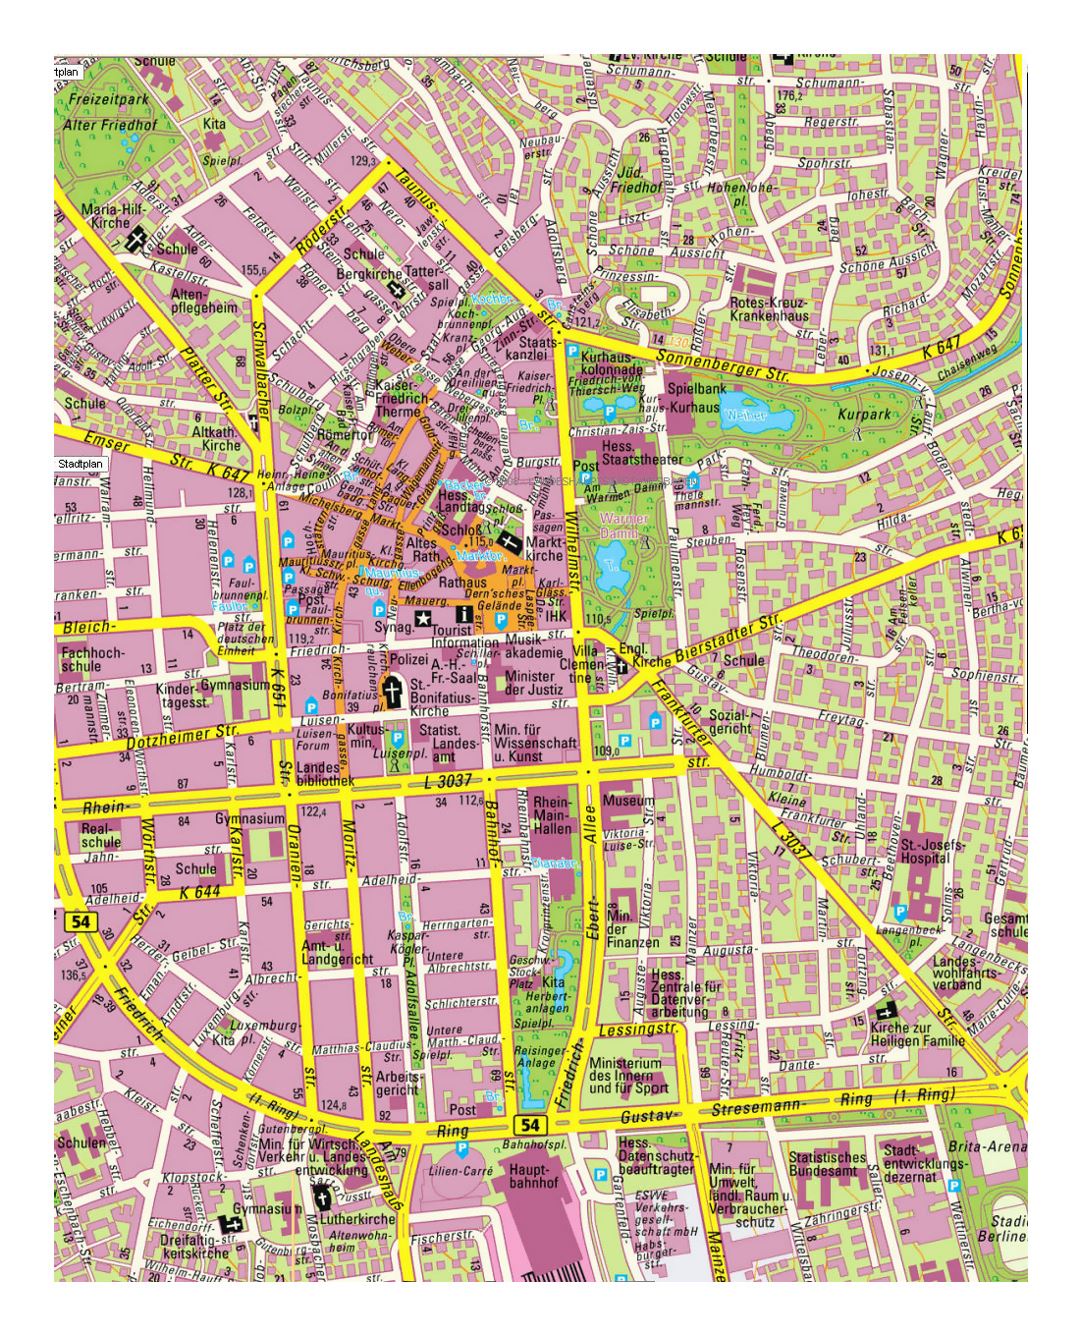 Детальная карта улиц центральной части Висбадена